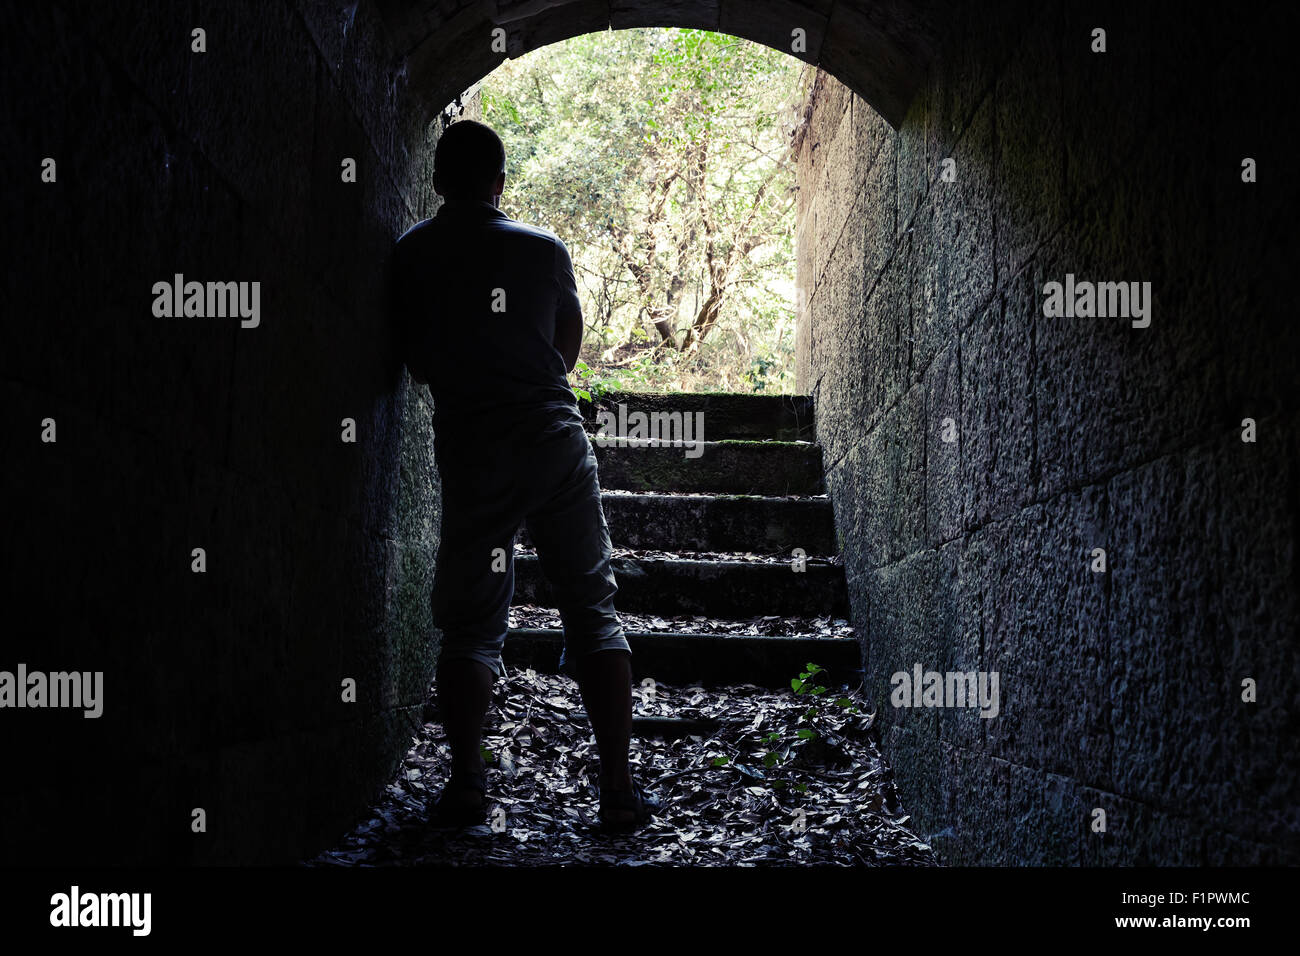 Giovane uomo sorge in pietra scura tunnel con estremità incandescente, vintage la correzione delle tonalità effetto di filtro Foto Stock